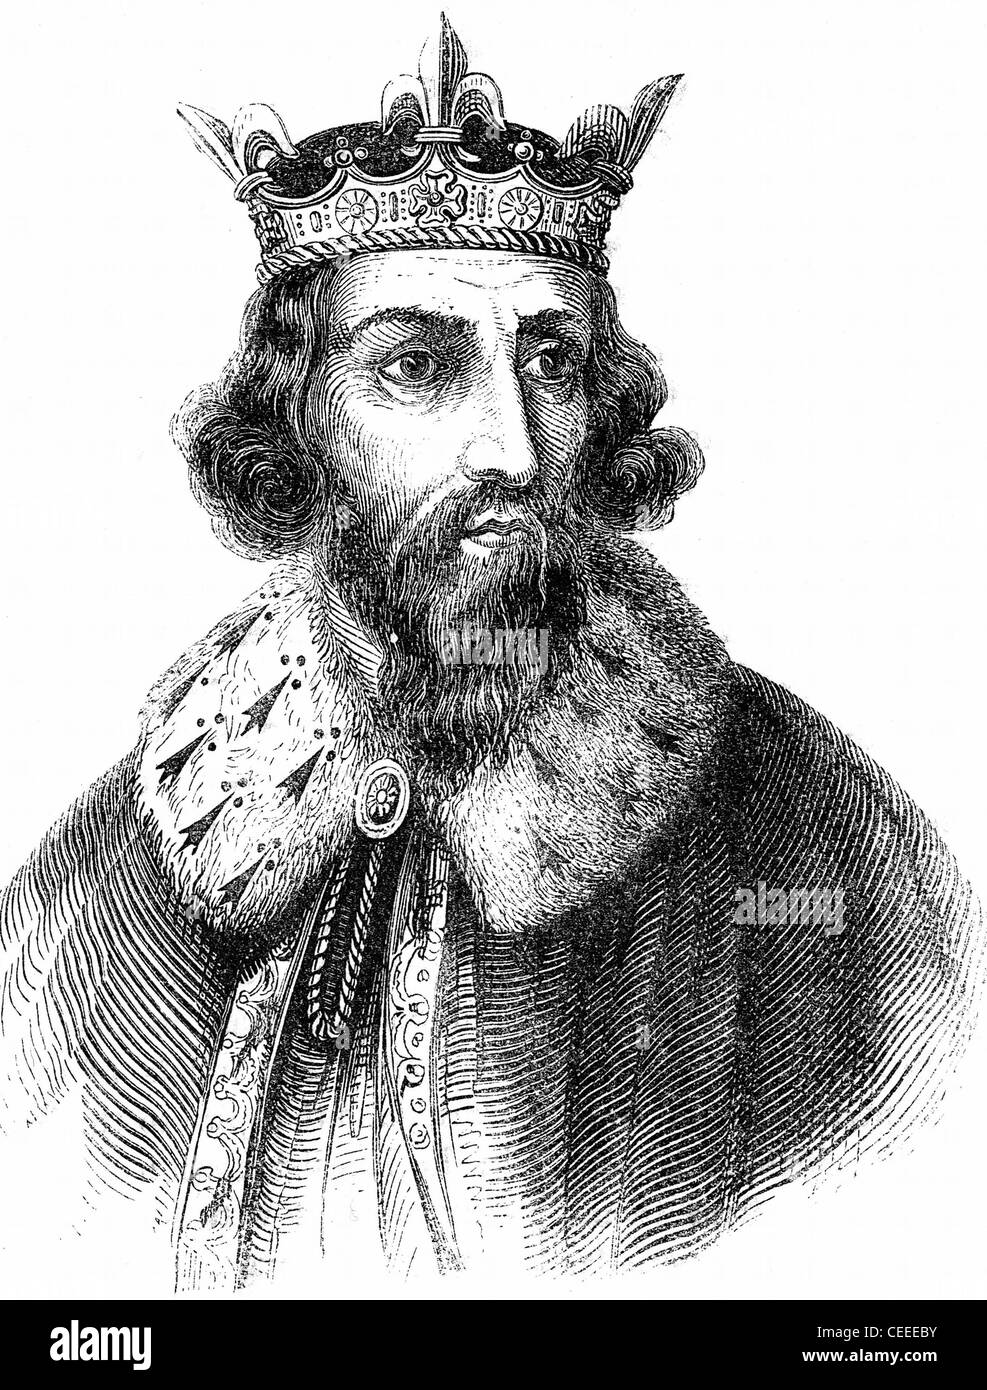 Alfred der große angelsächsischer König von Wessex von 871 Stockfoto